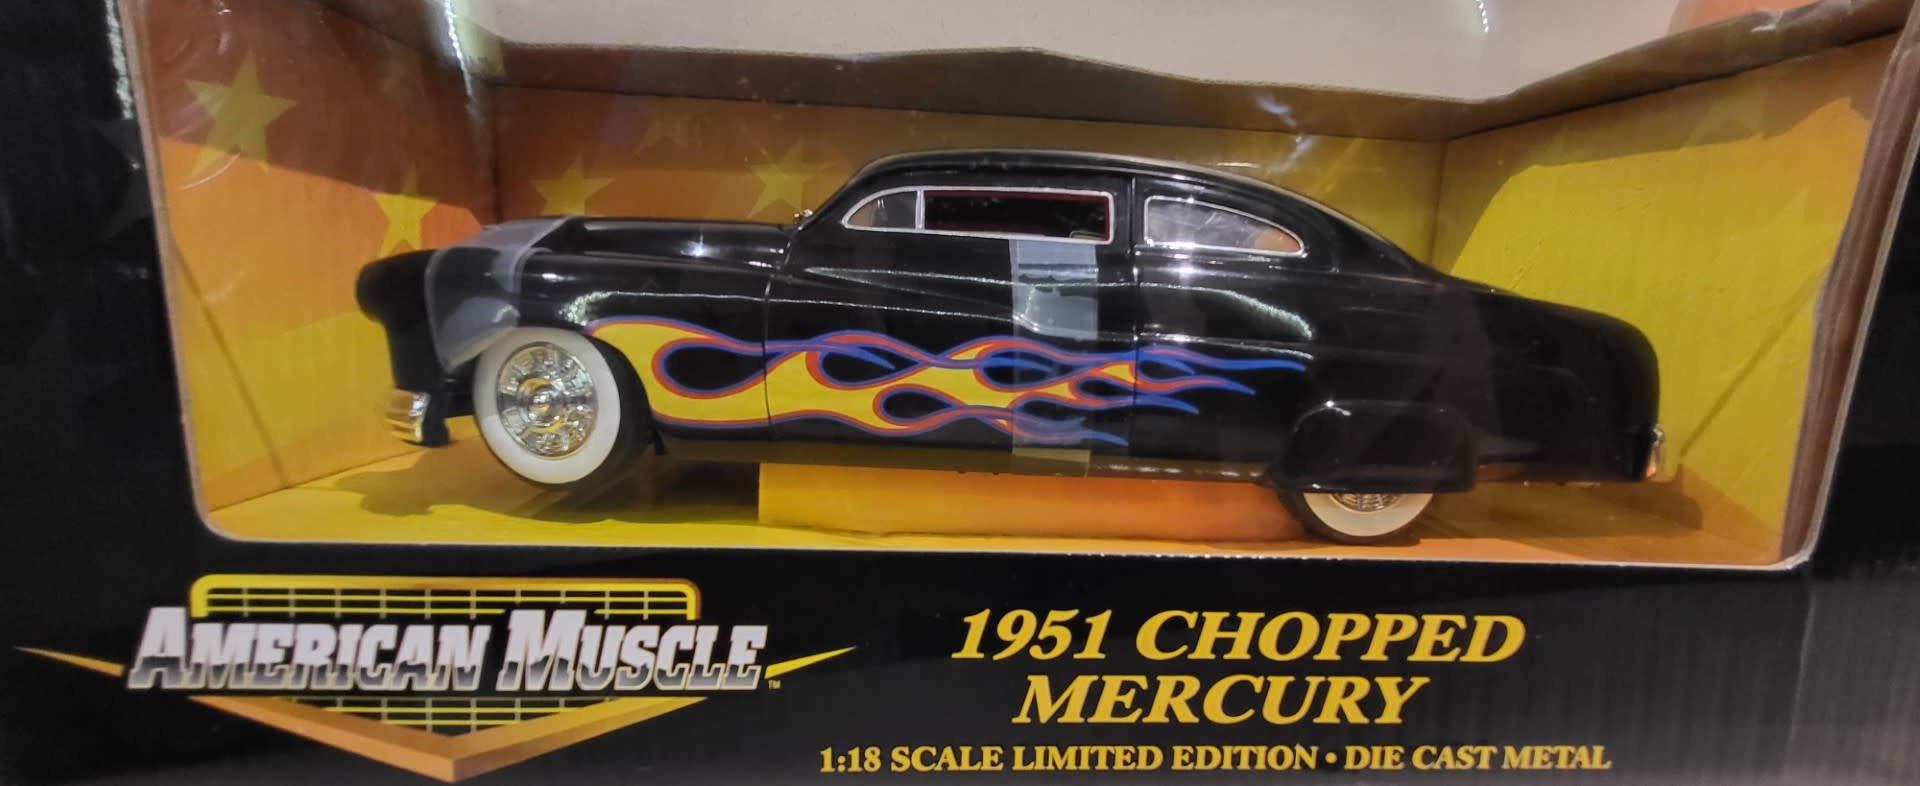 1951 Chopped Mercury American Muscle Ertl 1:18 Die Cast #32314